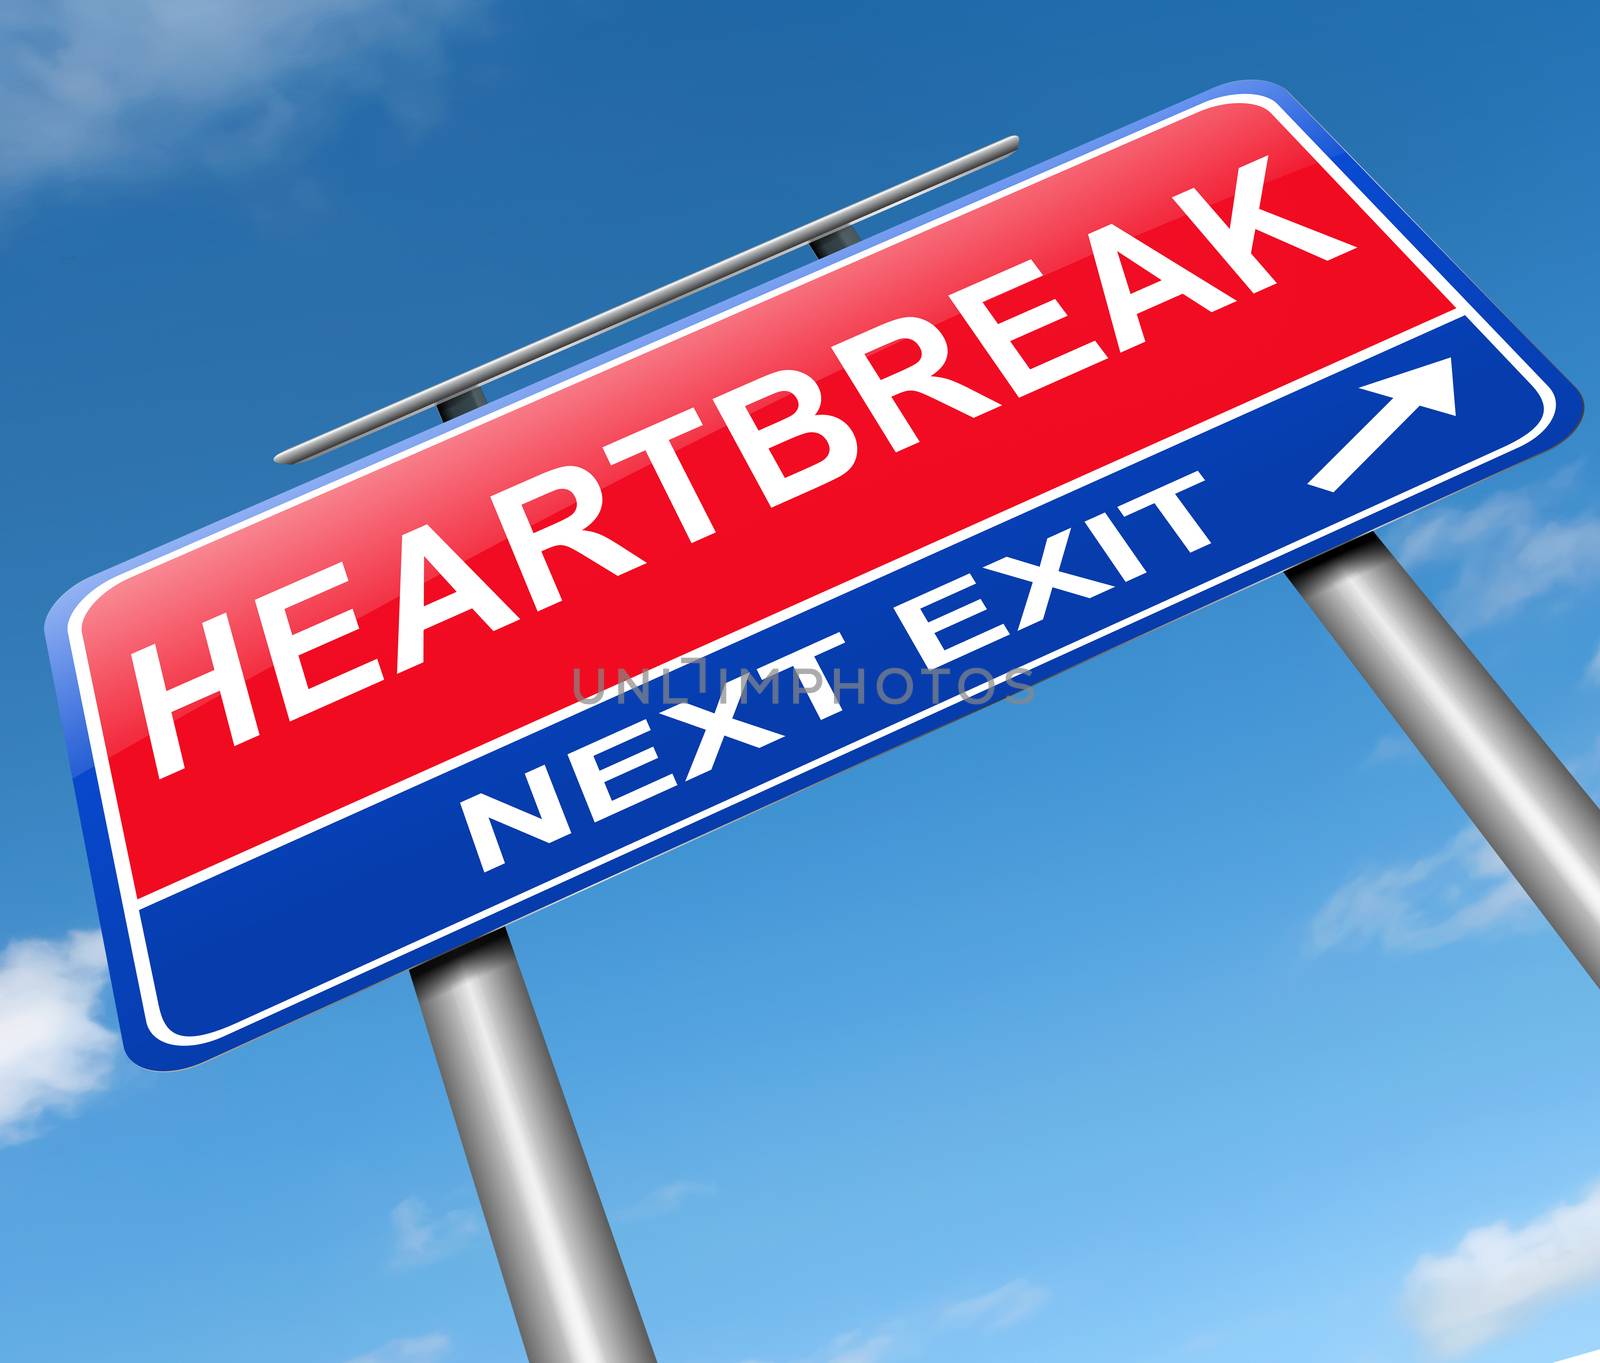 Heartbreak sign concept. by 72soul